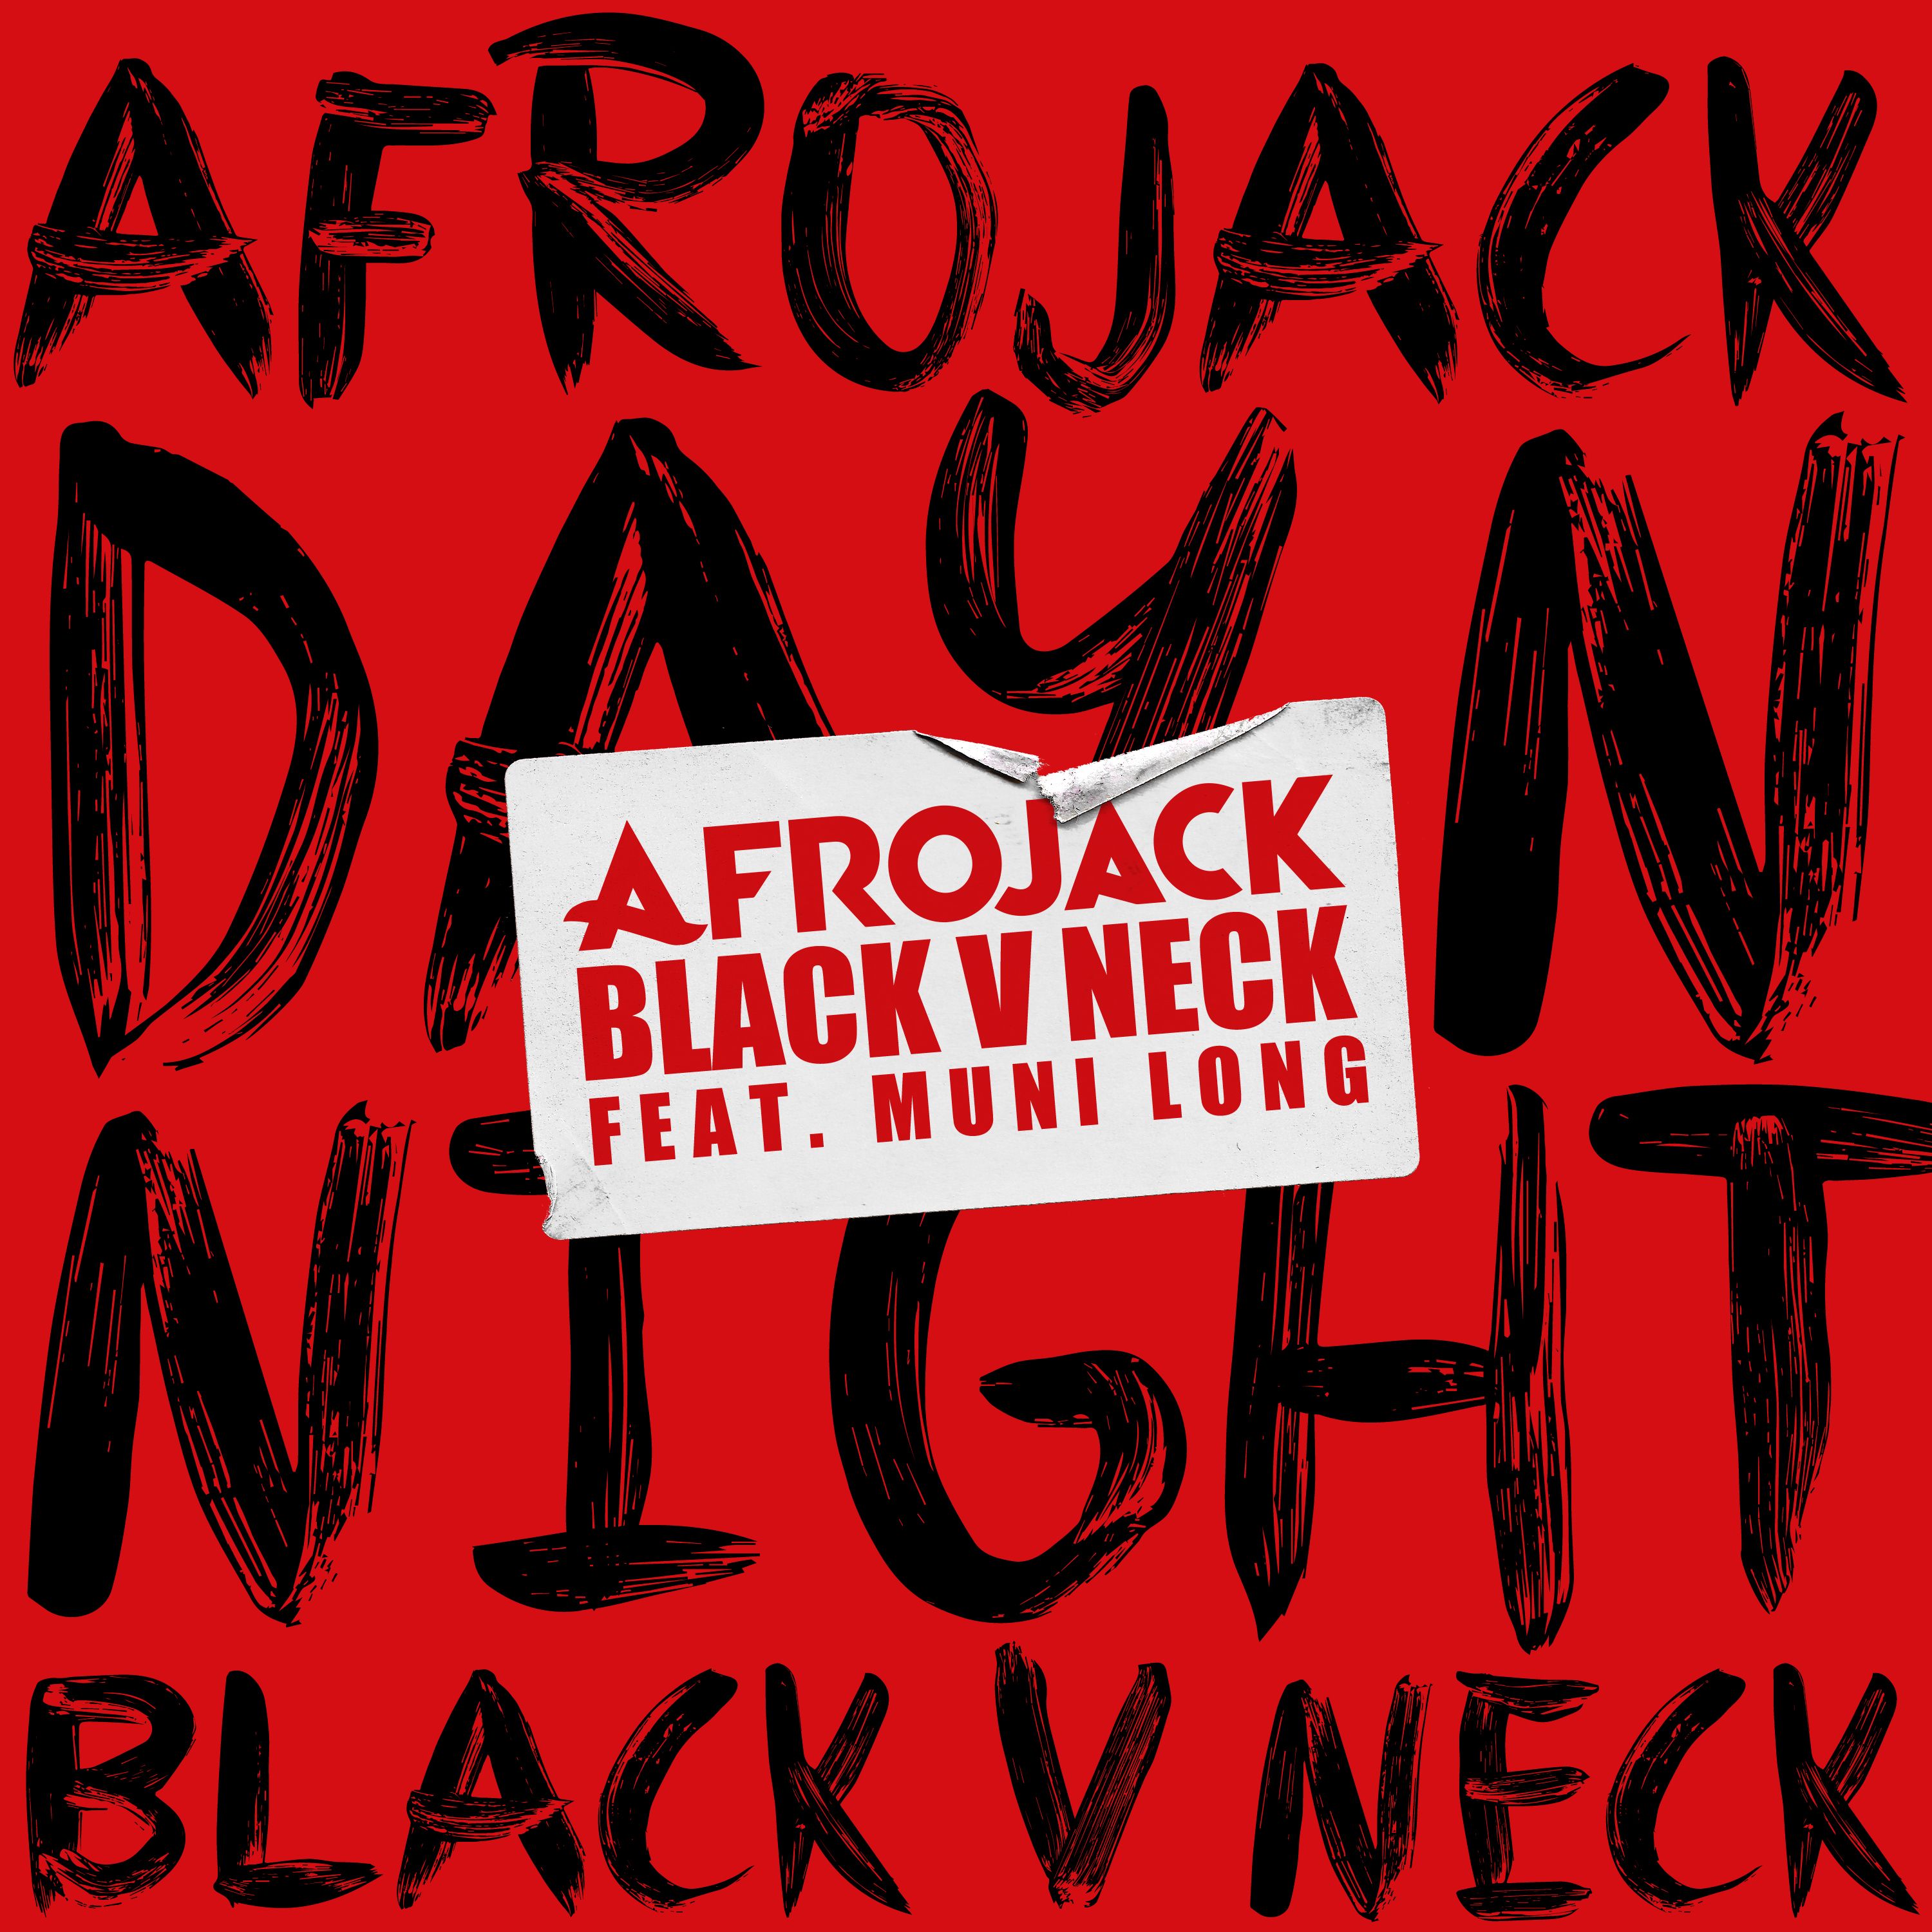  AFROJACK Y BLACK V NECK “DAY N NIGHT”